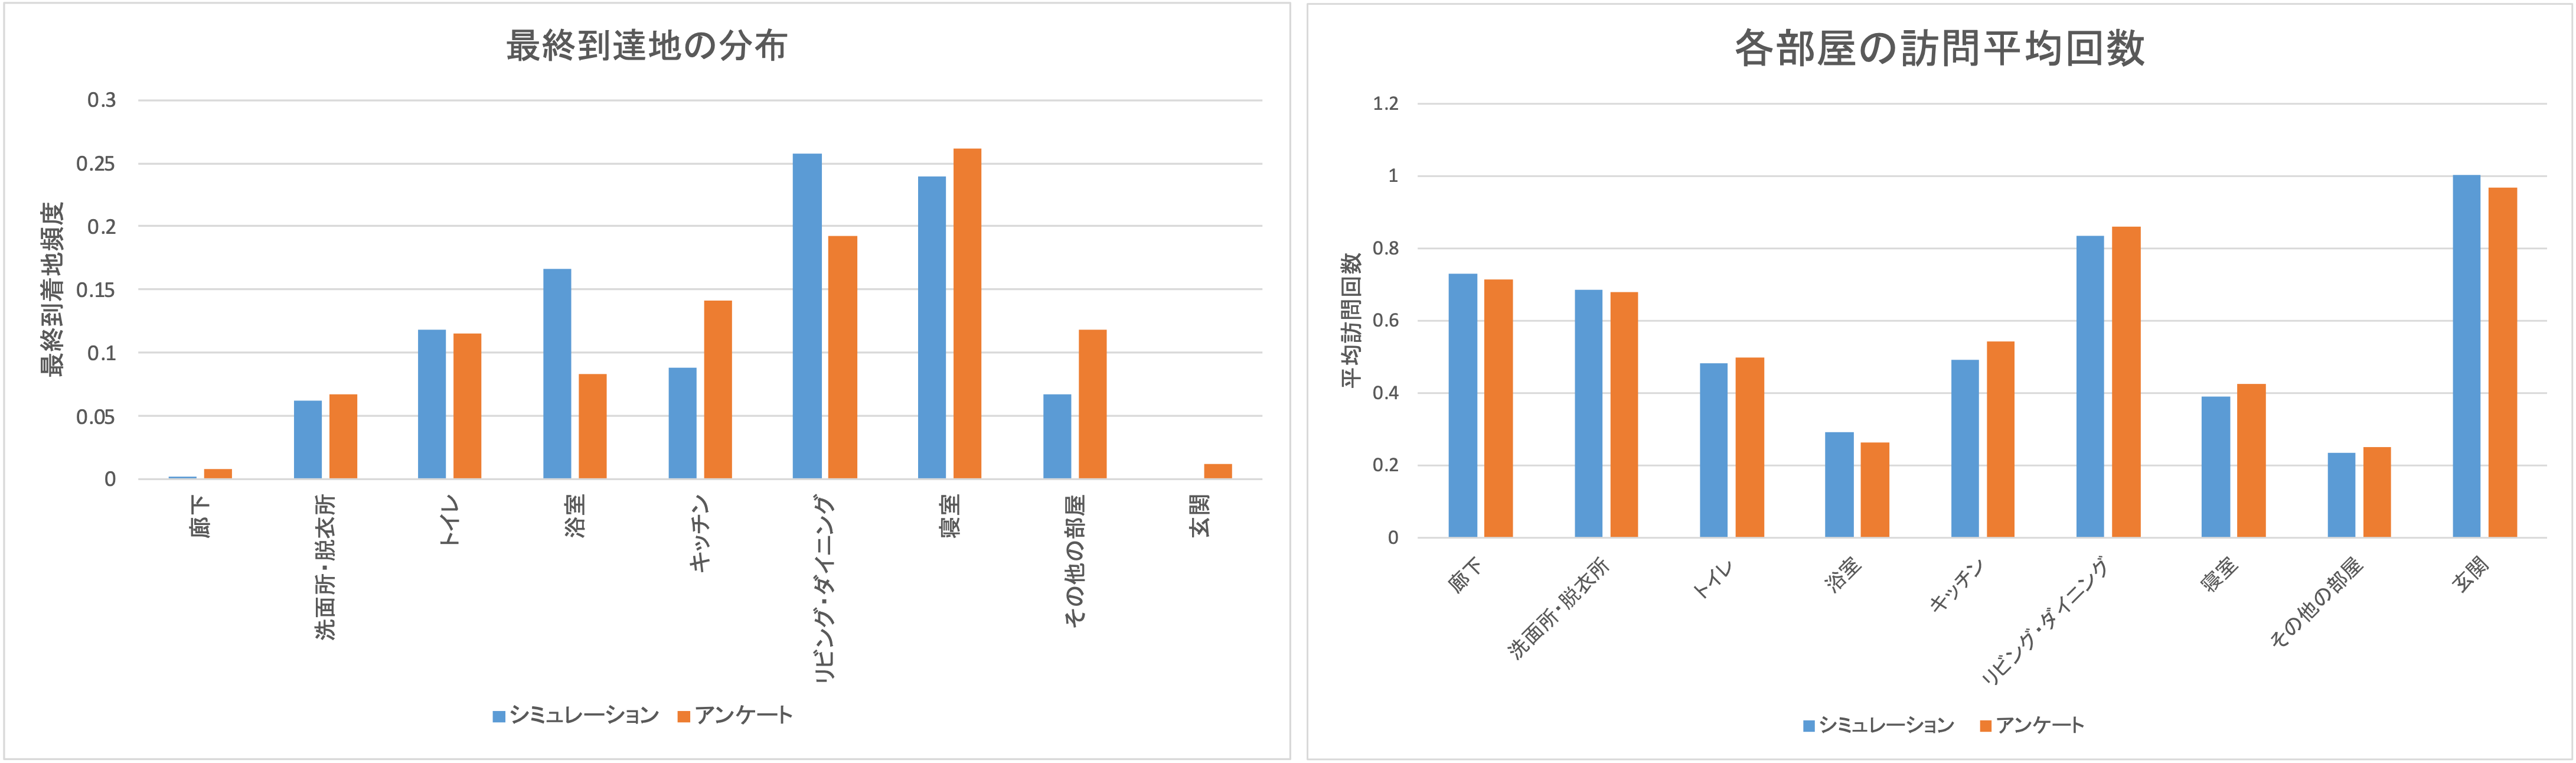 アンケートとシミュレーション実験の家庭内移動および滞在時間比較グラフ